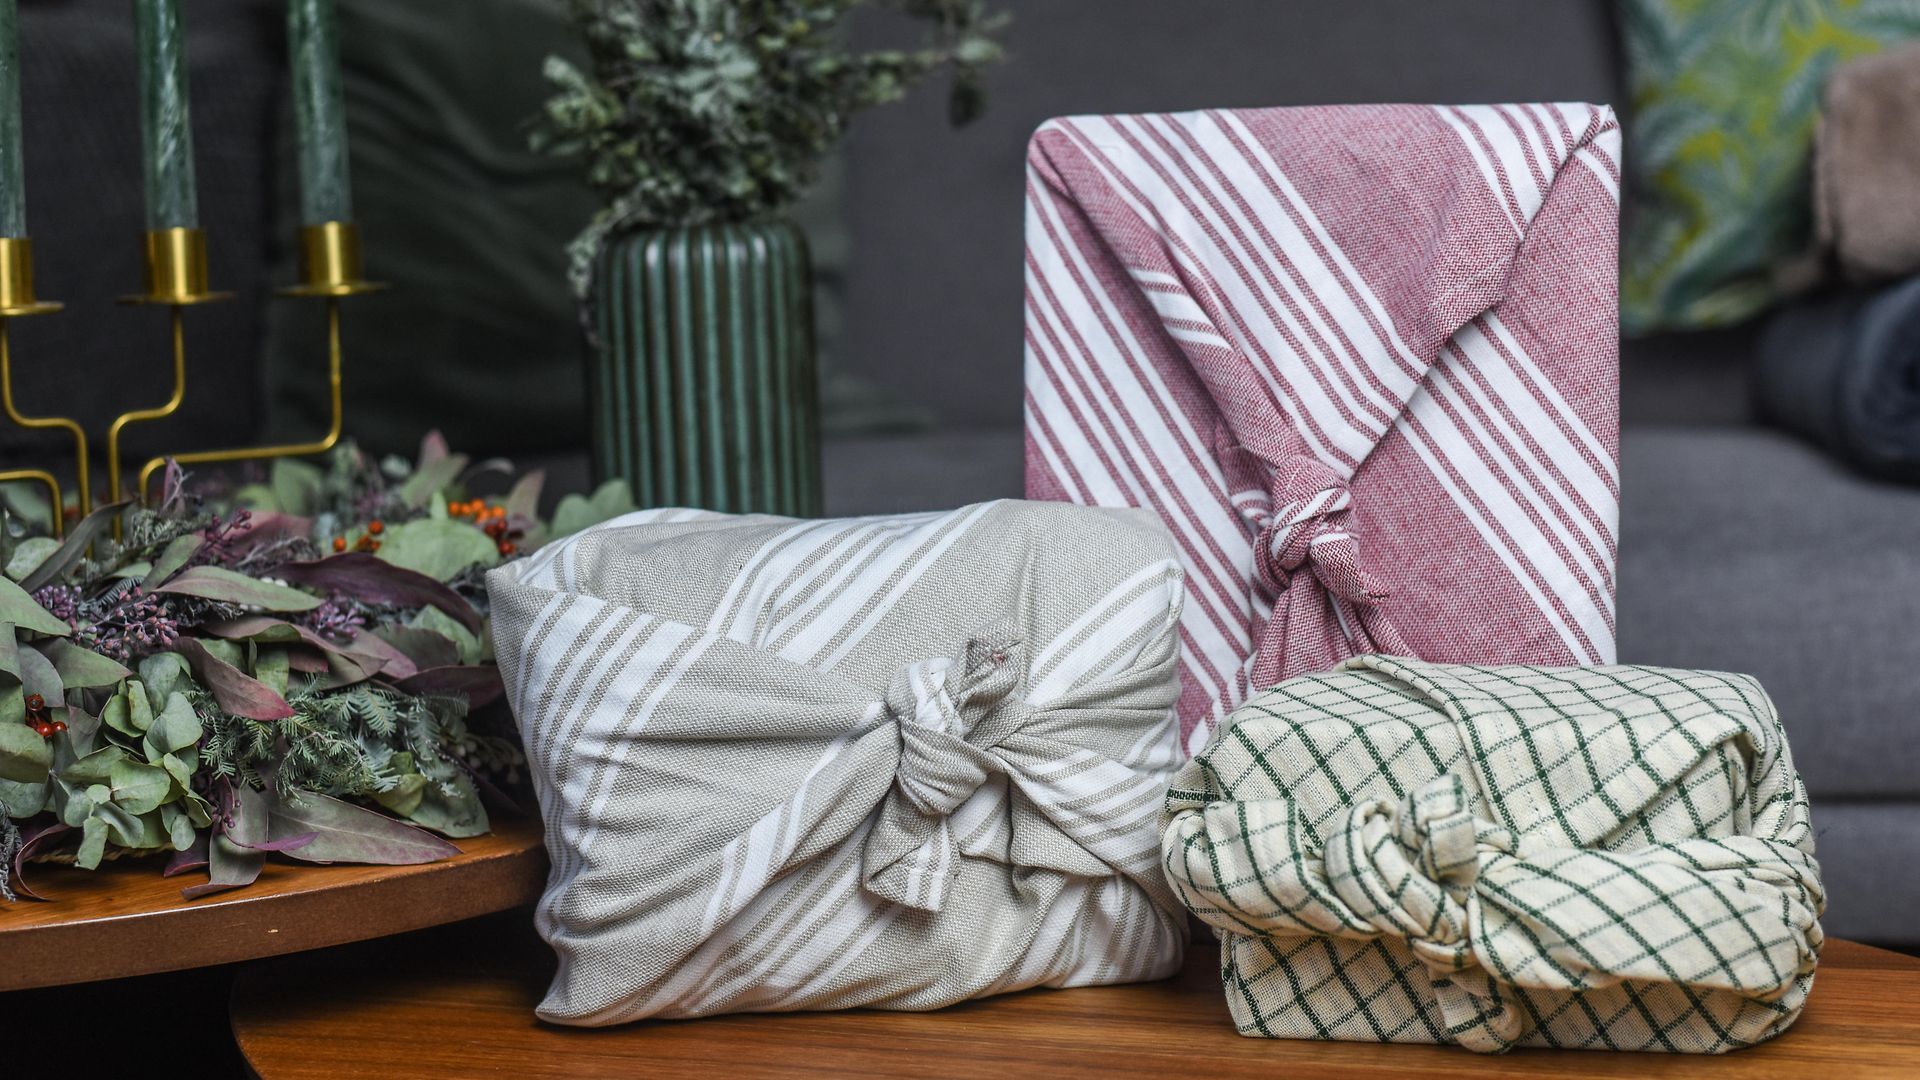 Drei Geschenke sind mit Stoff verpackt und liegen auf einem weihnachtlich geschmückten Tisch.